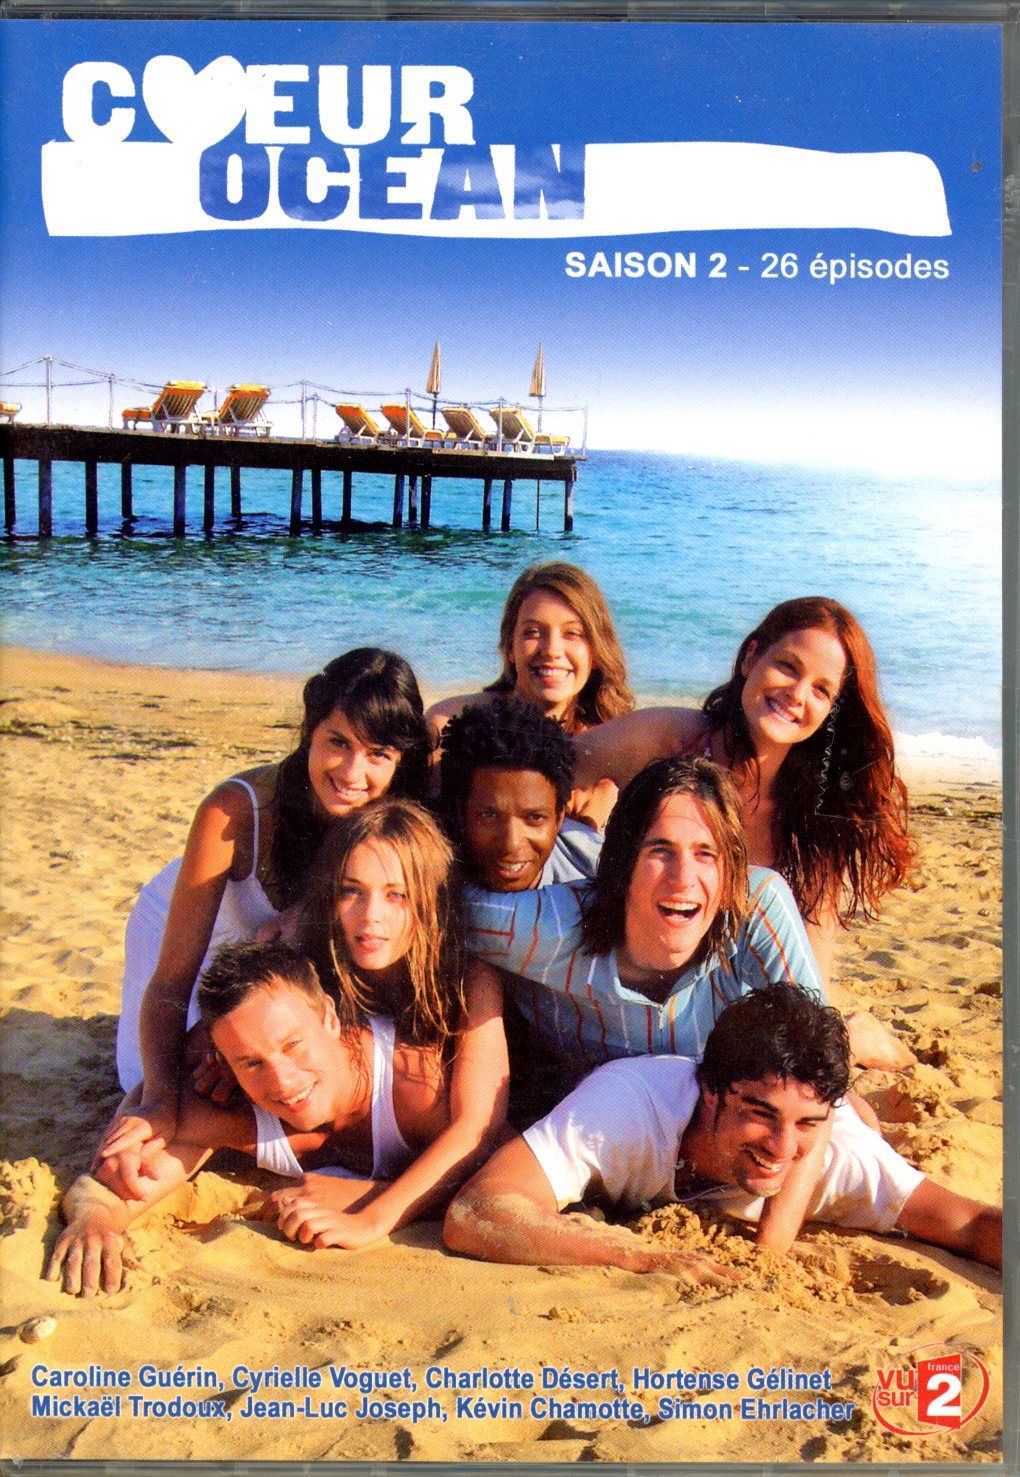 COEUR OCEAN DE LA SAISON 2 DANS UN COFFRET 4 DVD